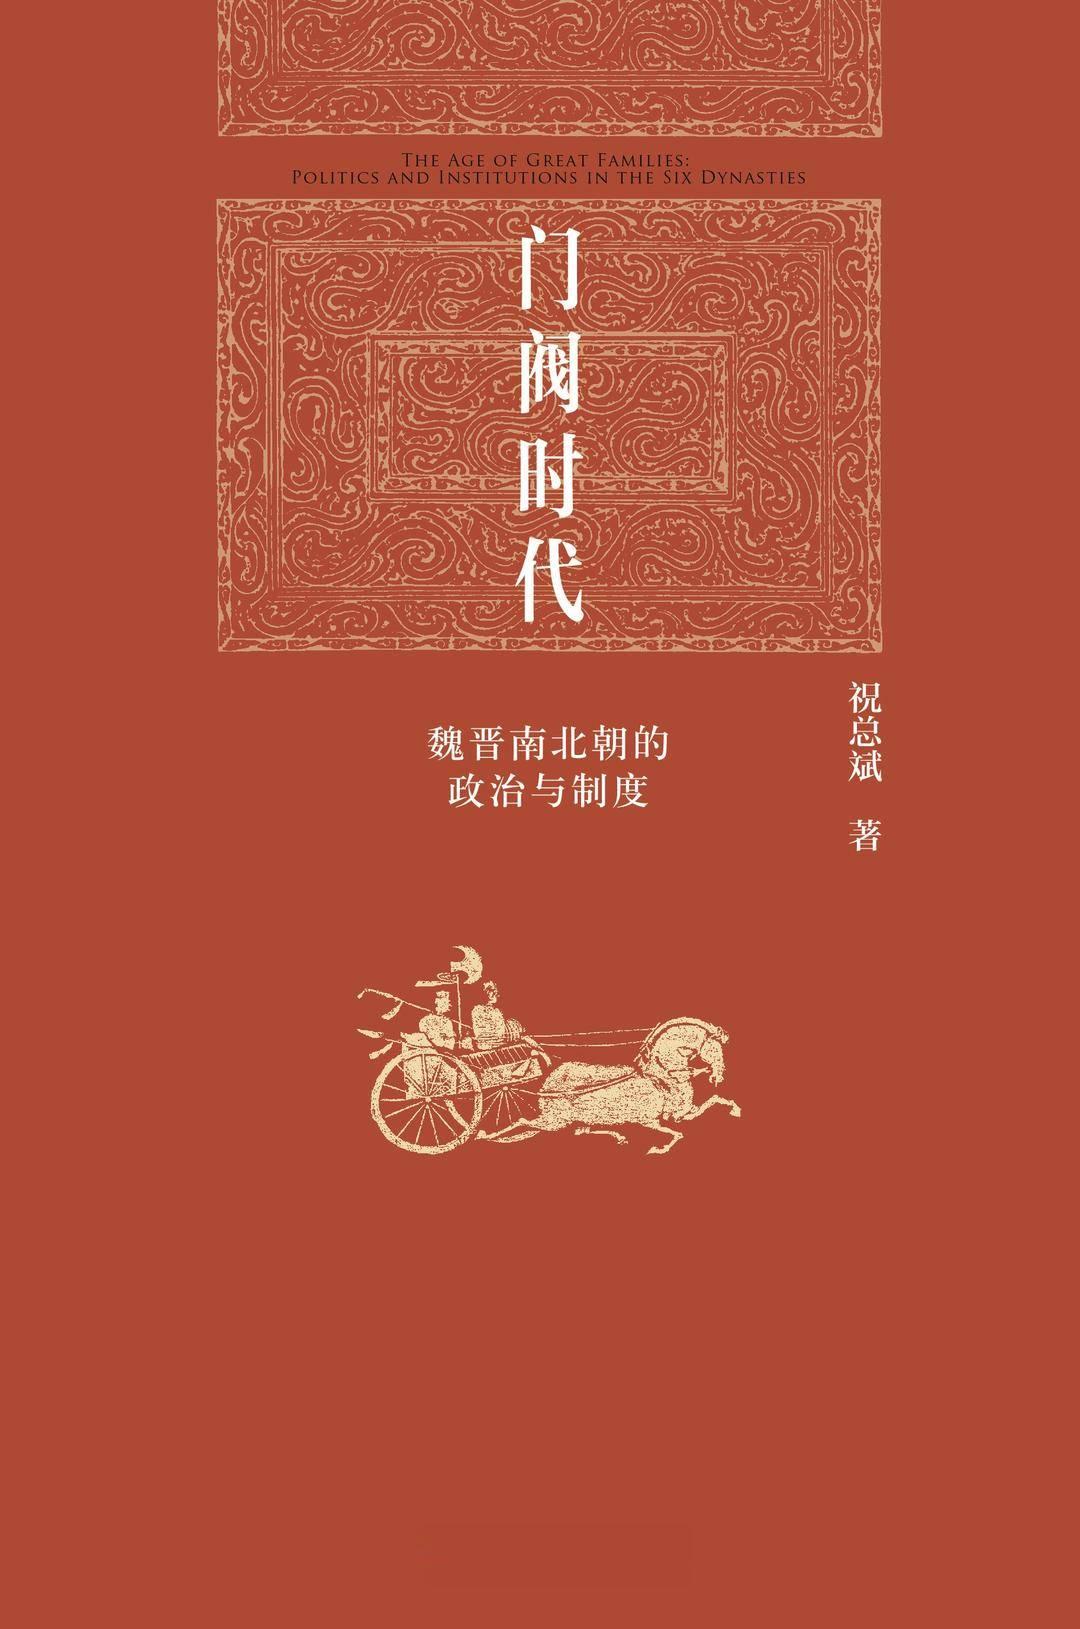 北大出版社发布2023年年度好书, 《门阀时代》《中国刑法评注》等上榜